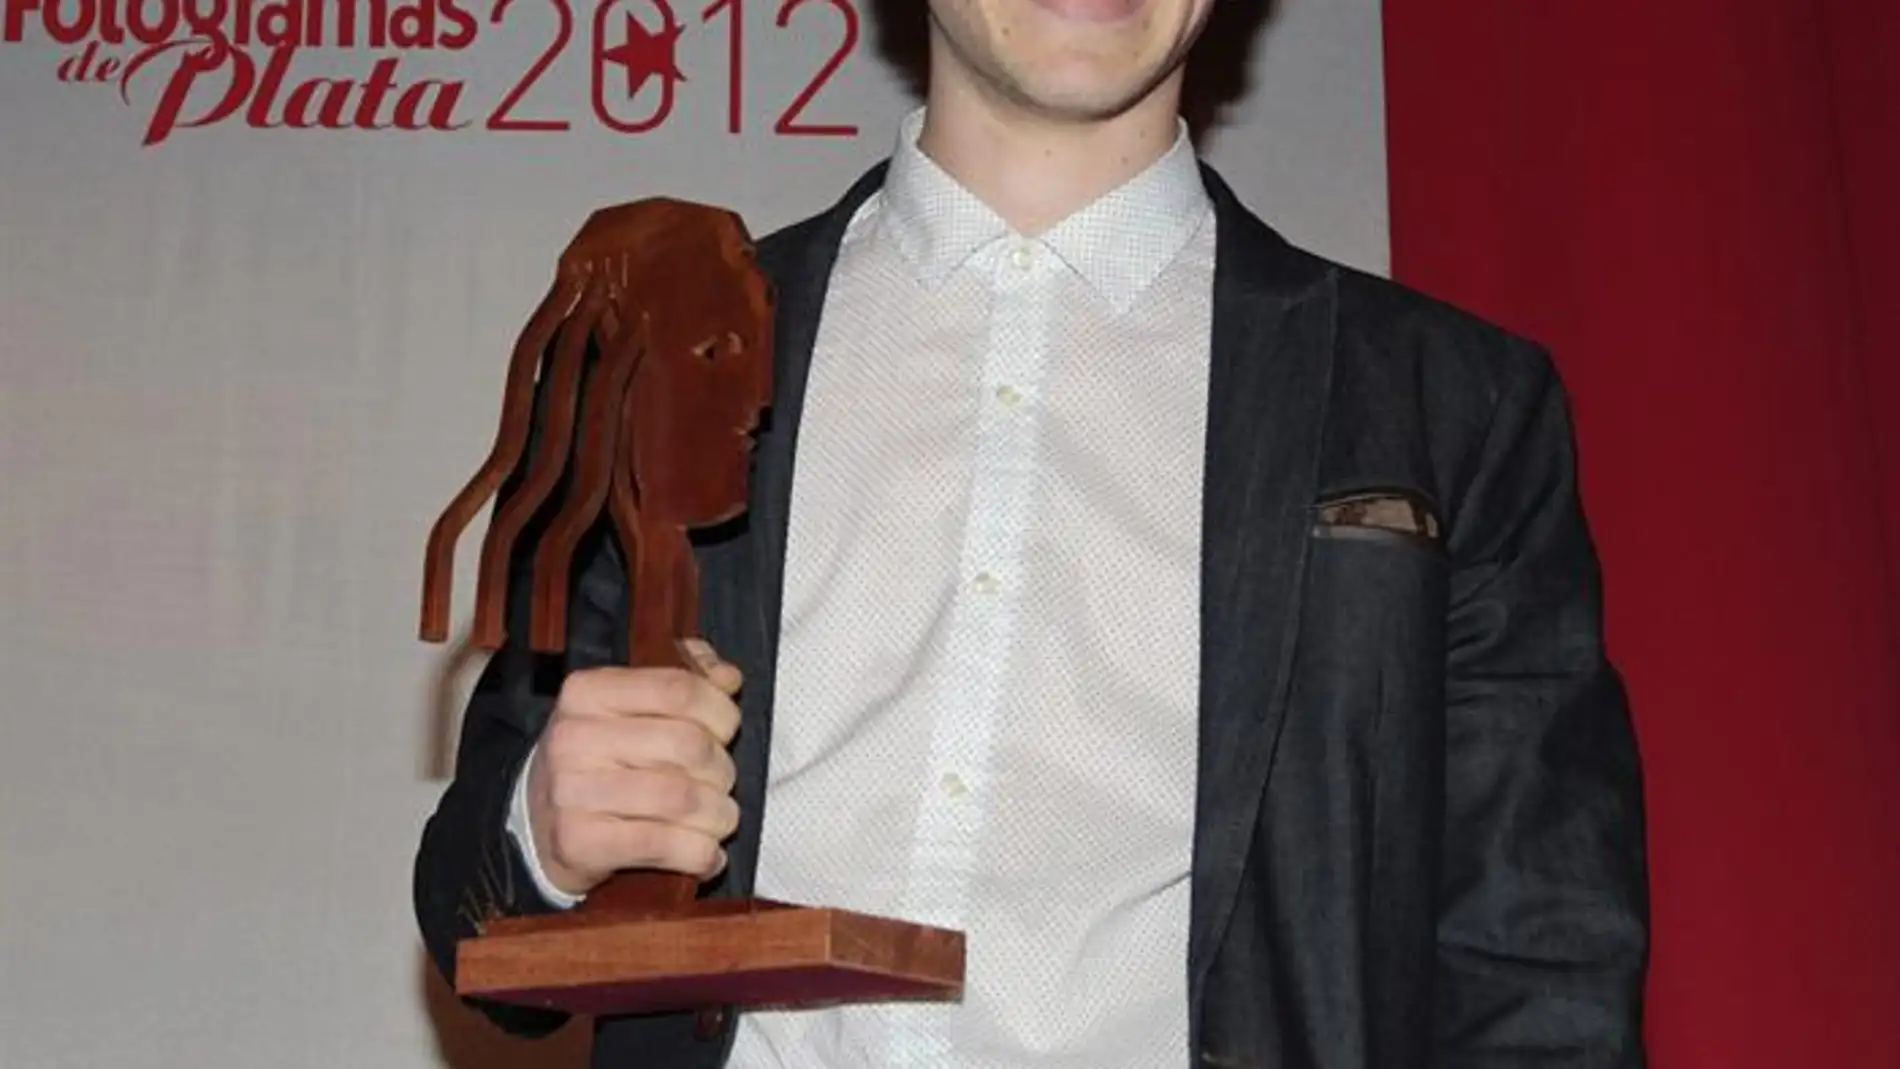 El actor Álex Monner, tras recibir el Fotogramas de Plata a "Mejor actor de televisión", por su trabajo en "Pulseras rojas"